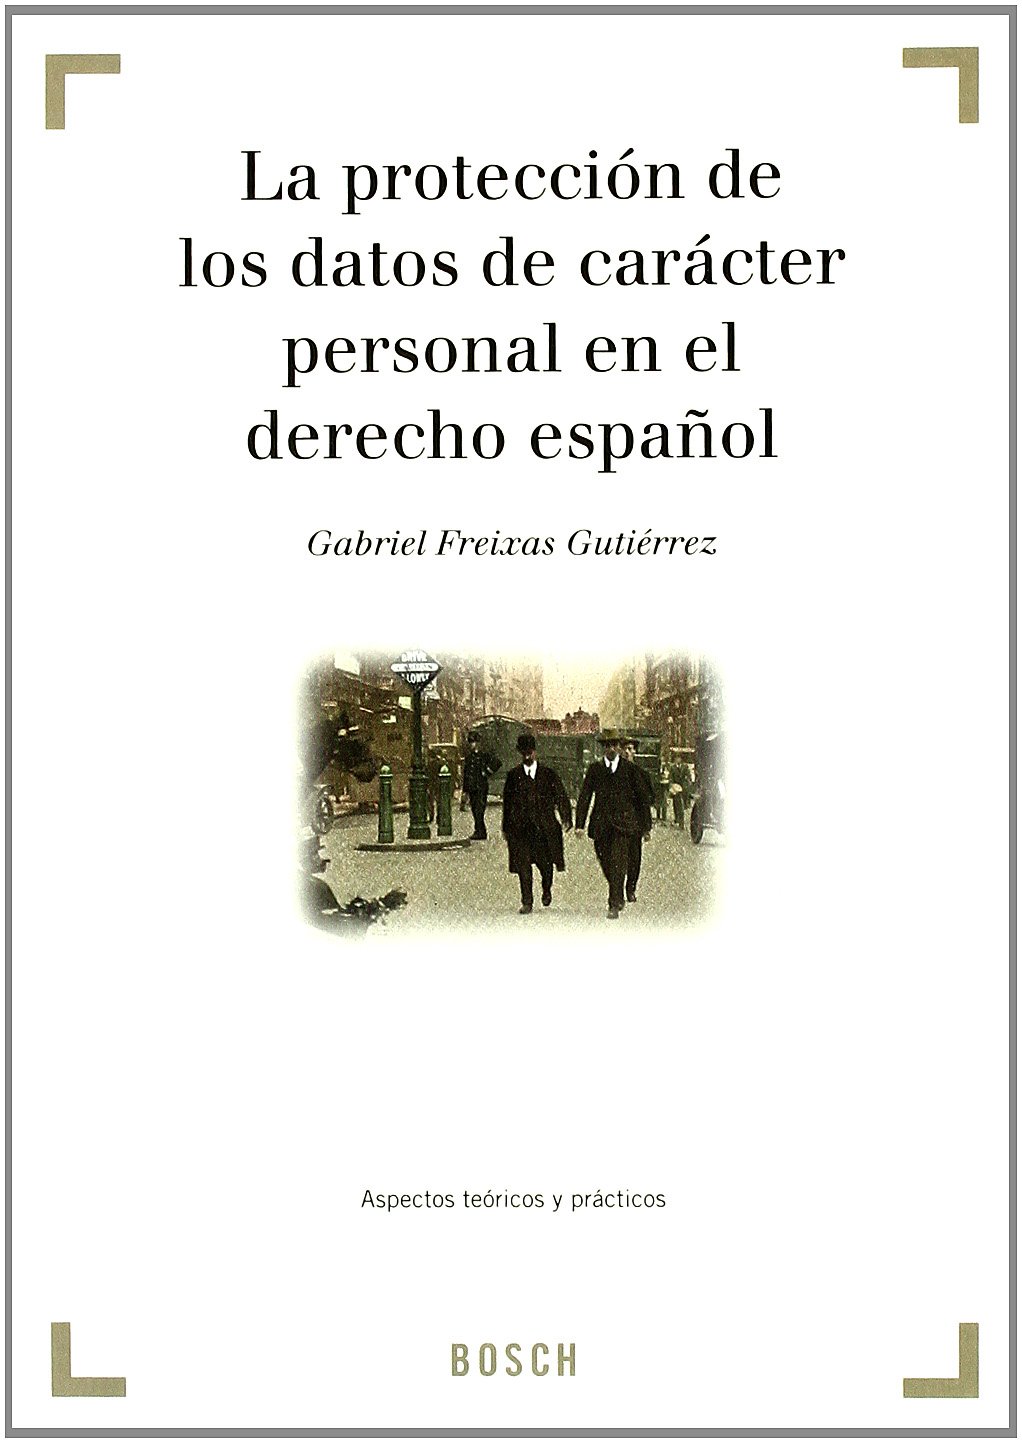 La protección de los datos de carácter personal en el derecho español 